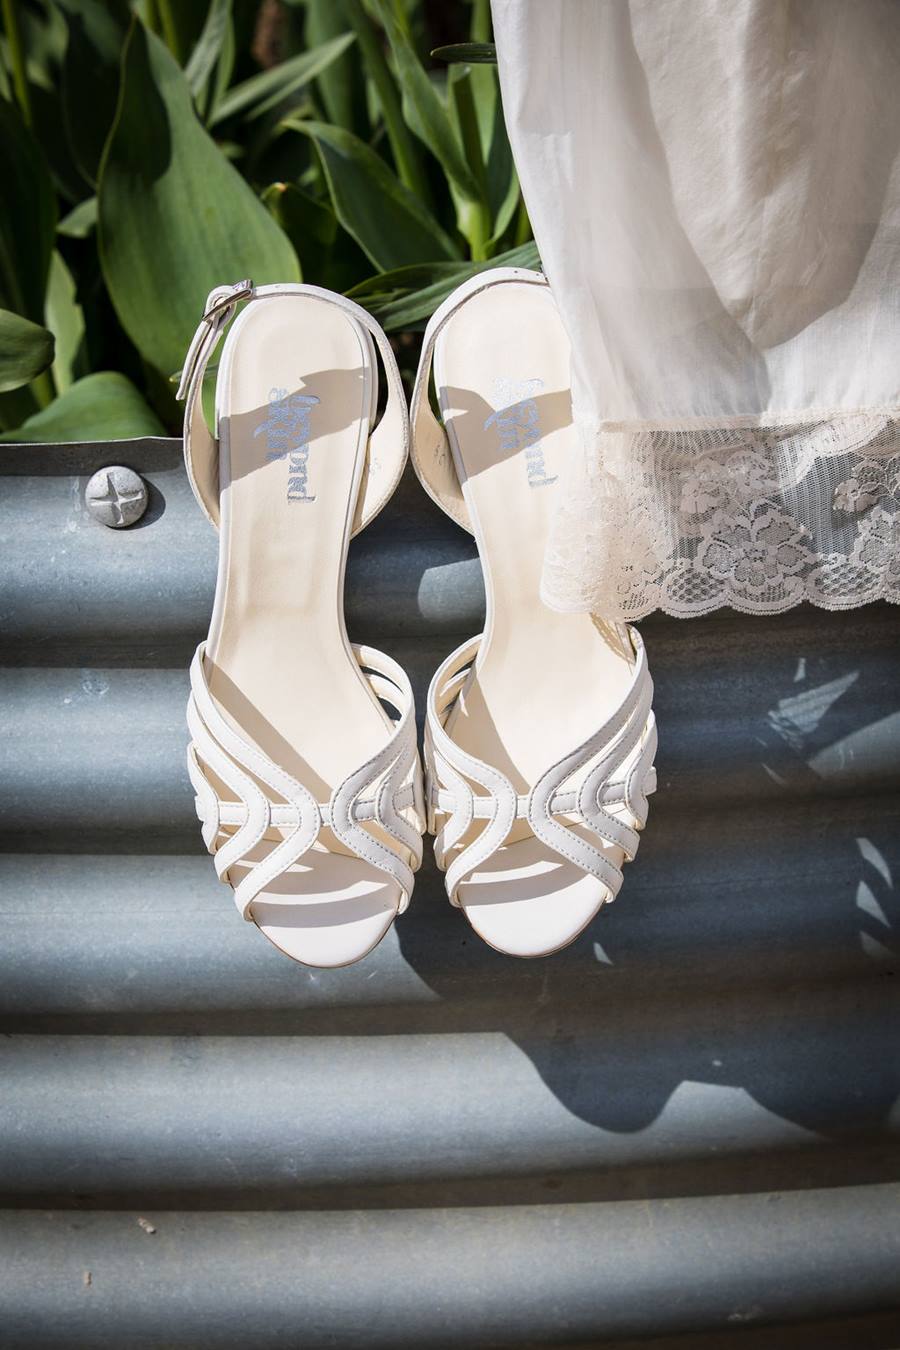 Vegan wedding shoes from Beyond Skin